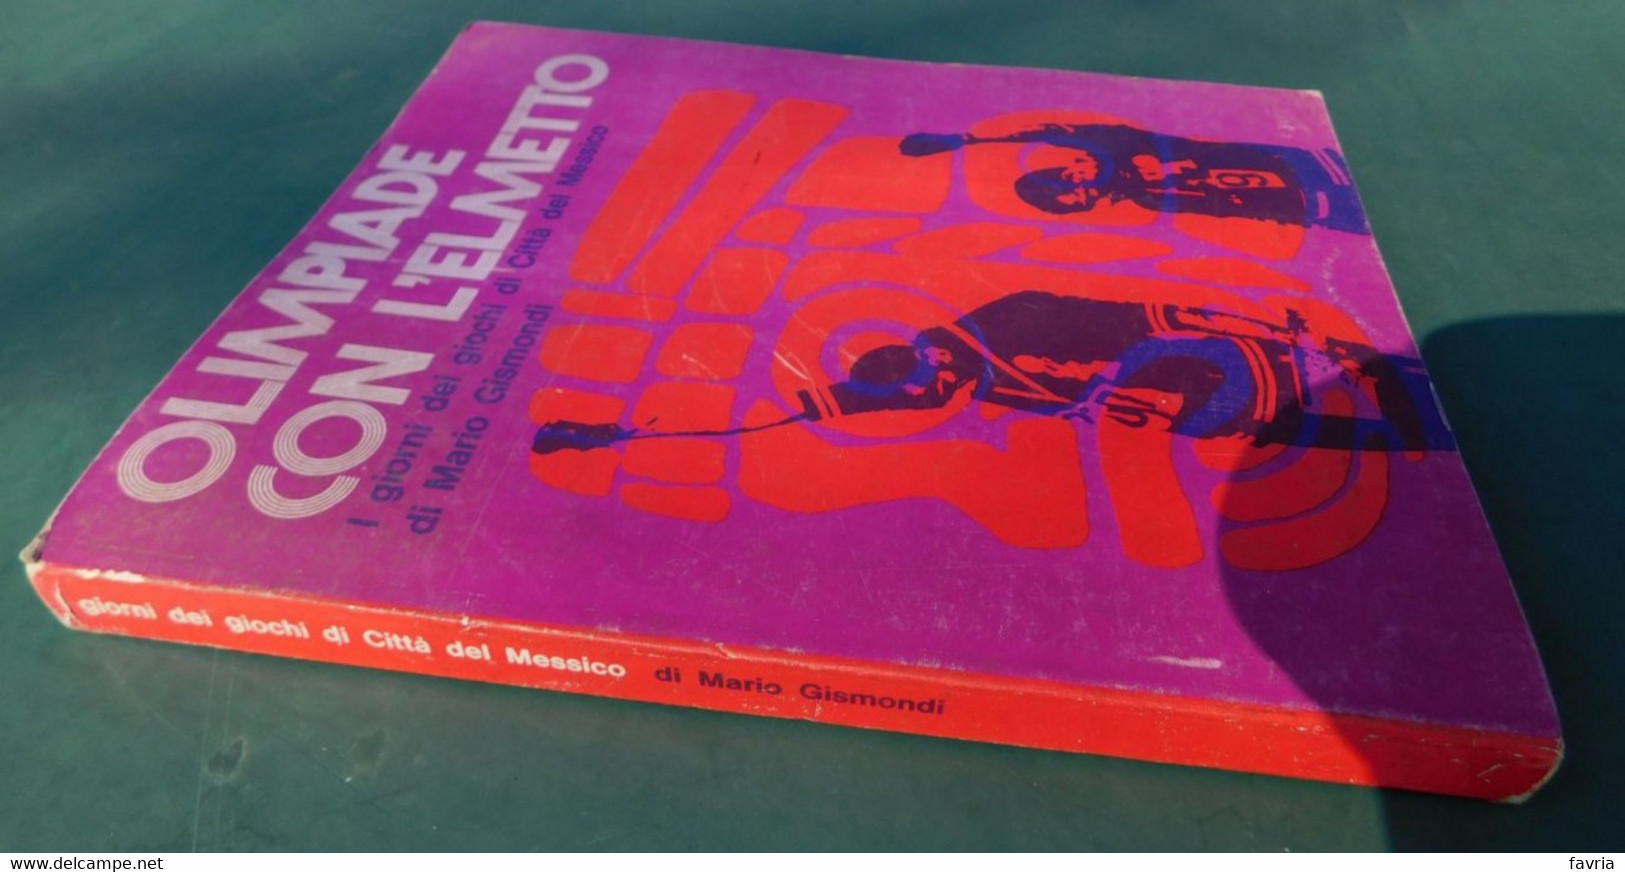 OLIMPIADE CON L'ELMETTO ( I Giorni Dei Giochi Di Città Del Messico) - Di Mario Gismondi - Ed. Gisca,1969 - Bücher